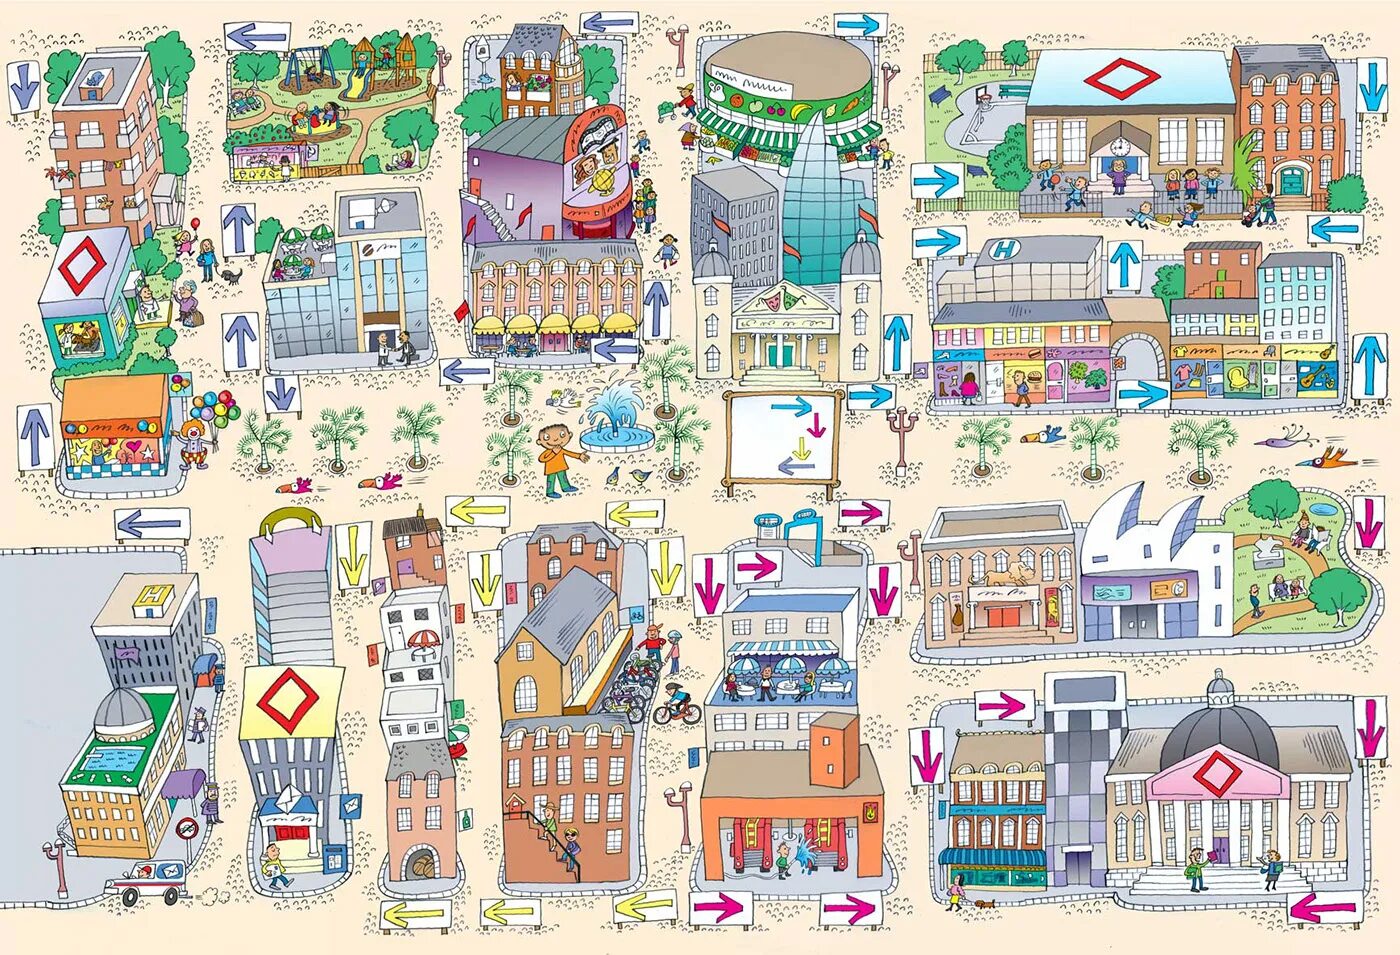 Getting around the city. Город сверху мультяшный. Карта города для детей. Картинка города с магазинами. Мультяшная карта города.